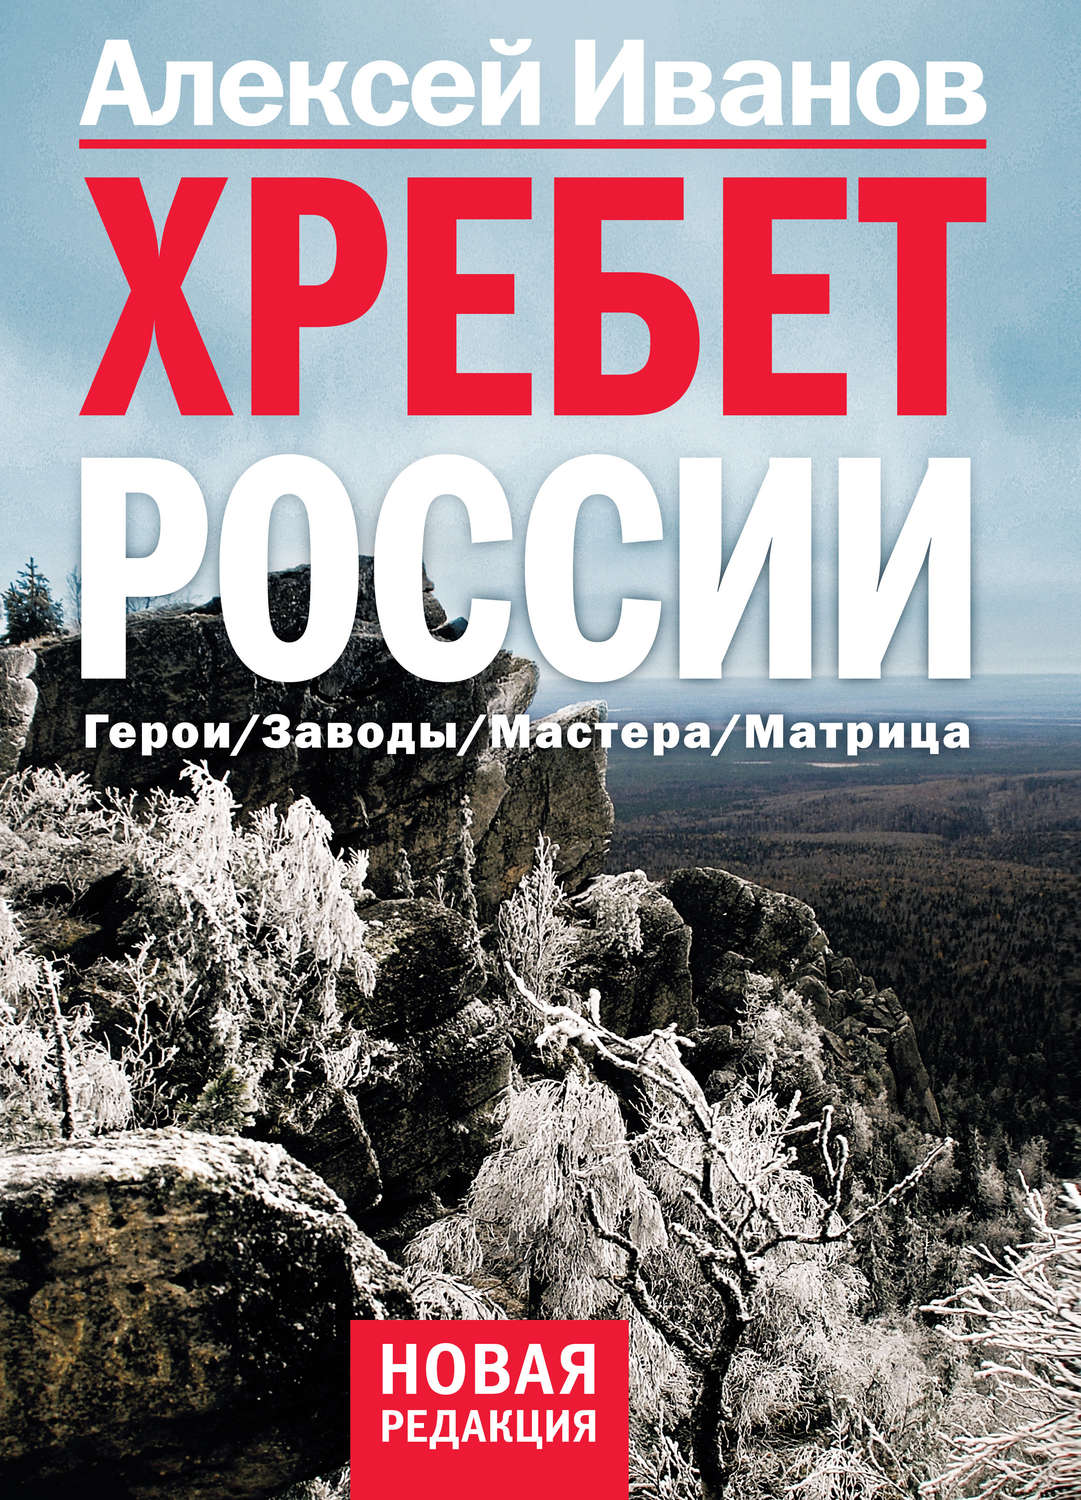 Книги алексея иванова скачать бесплатно хребет россии